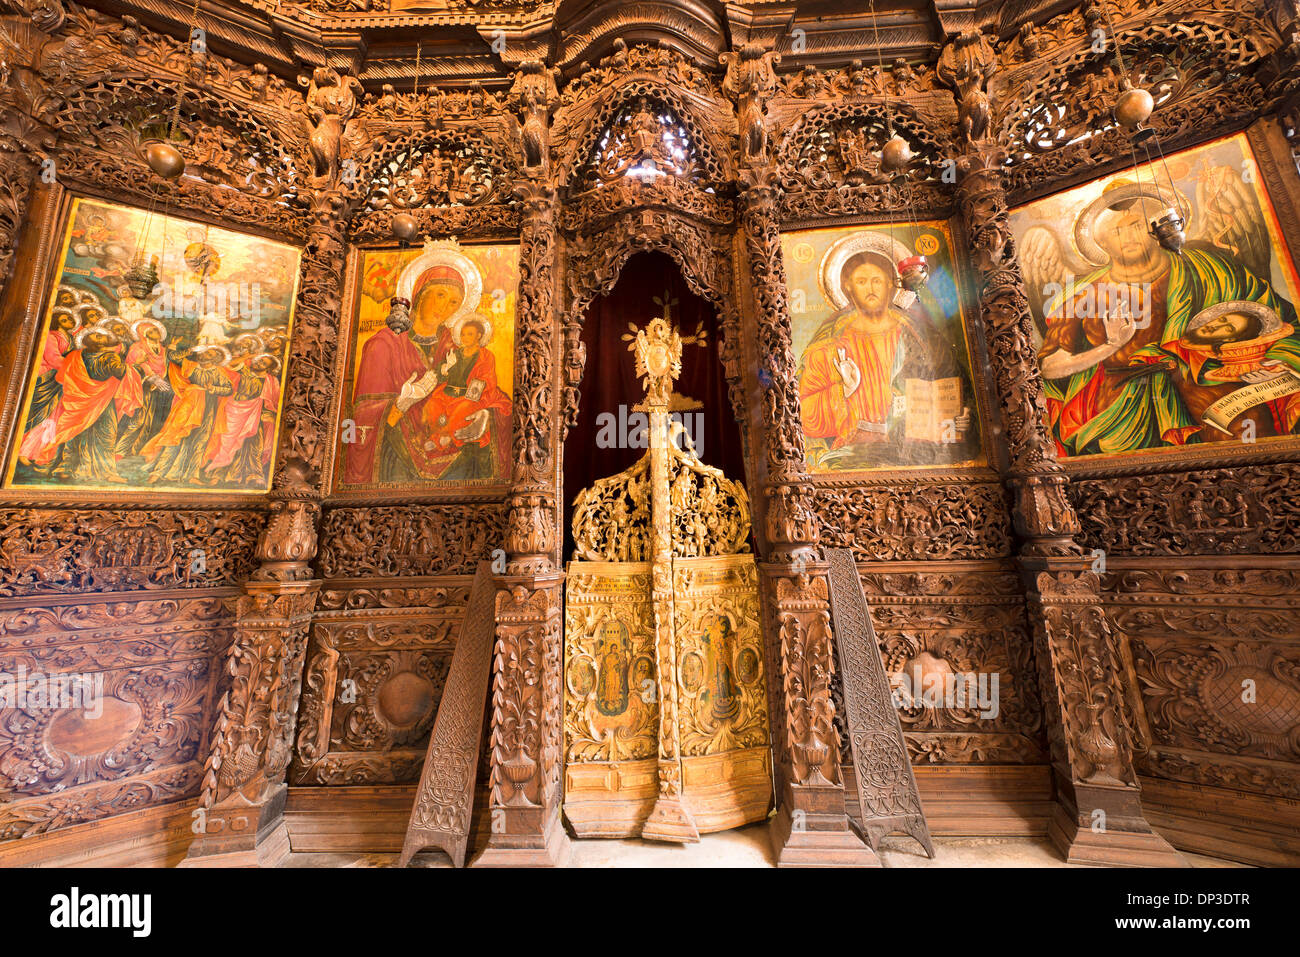 Iglesia de San Spas Skopje Macedonia Región de los Balcanes Occidentales, Europa frescos y tallada iconostases tallas de madera del siglo XVII. Foto de stock